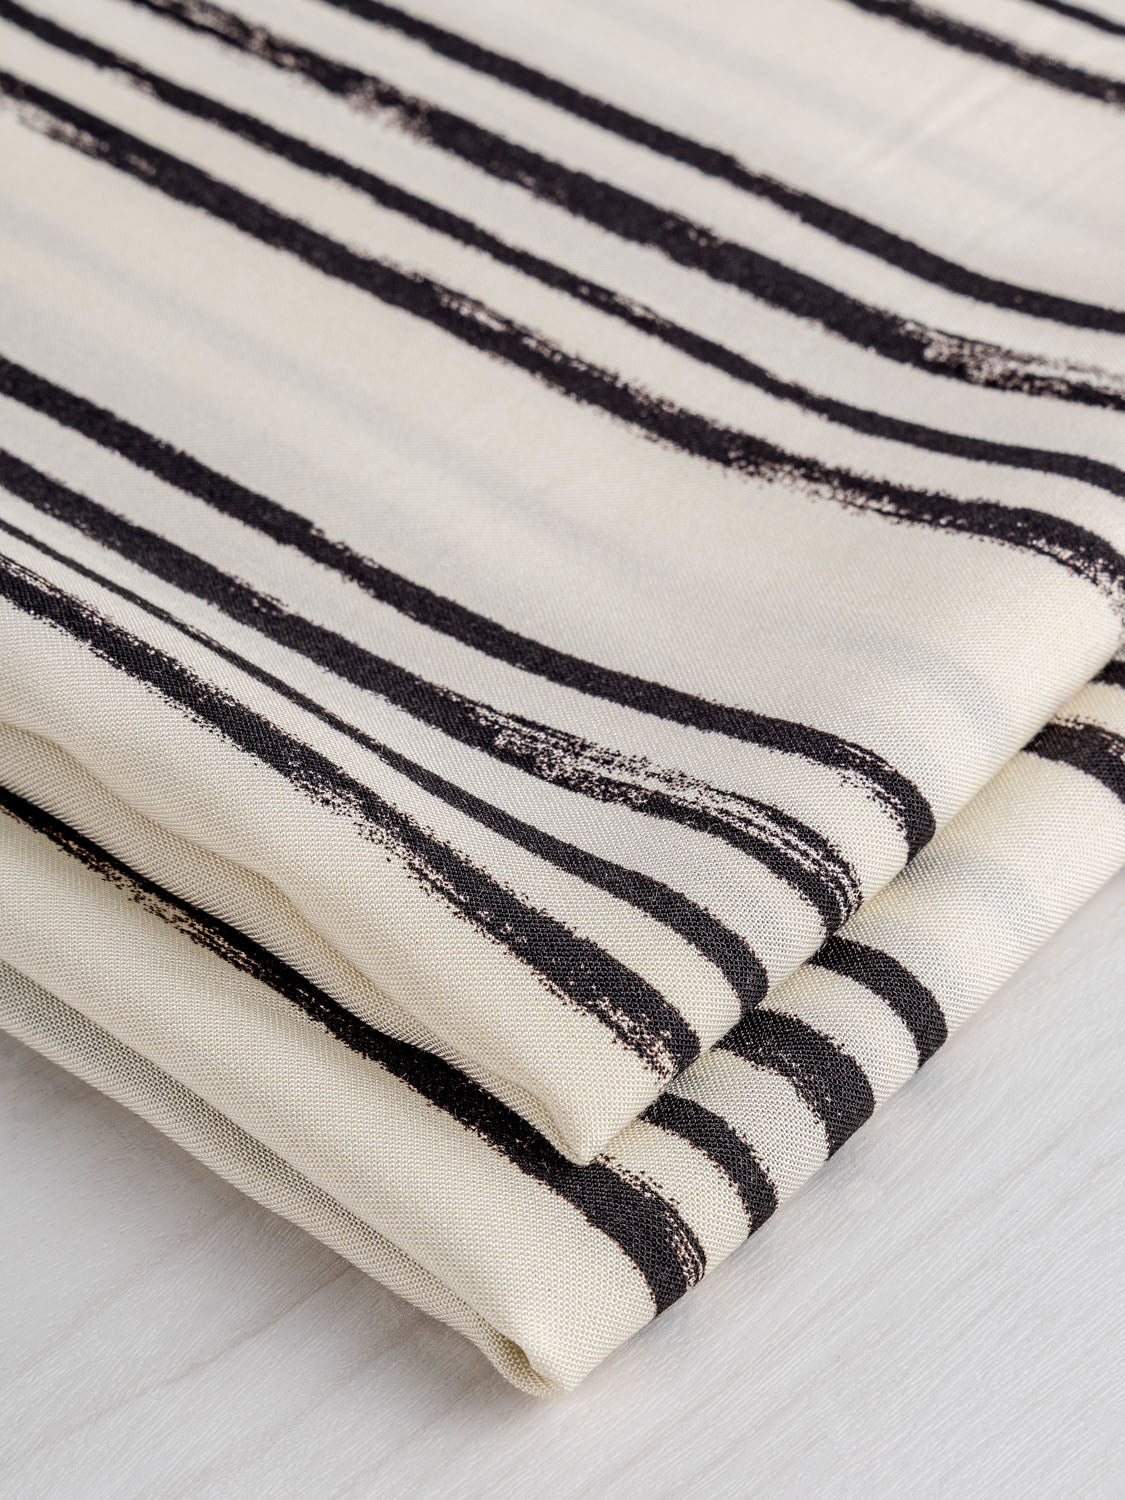 Rustic Stripes Viscose Deadstock - Cream + Black | Core Fabrics